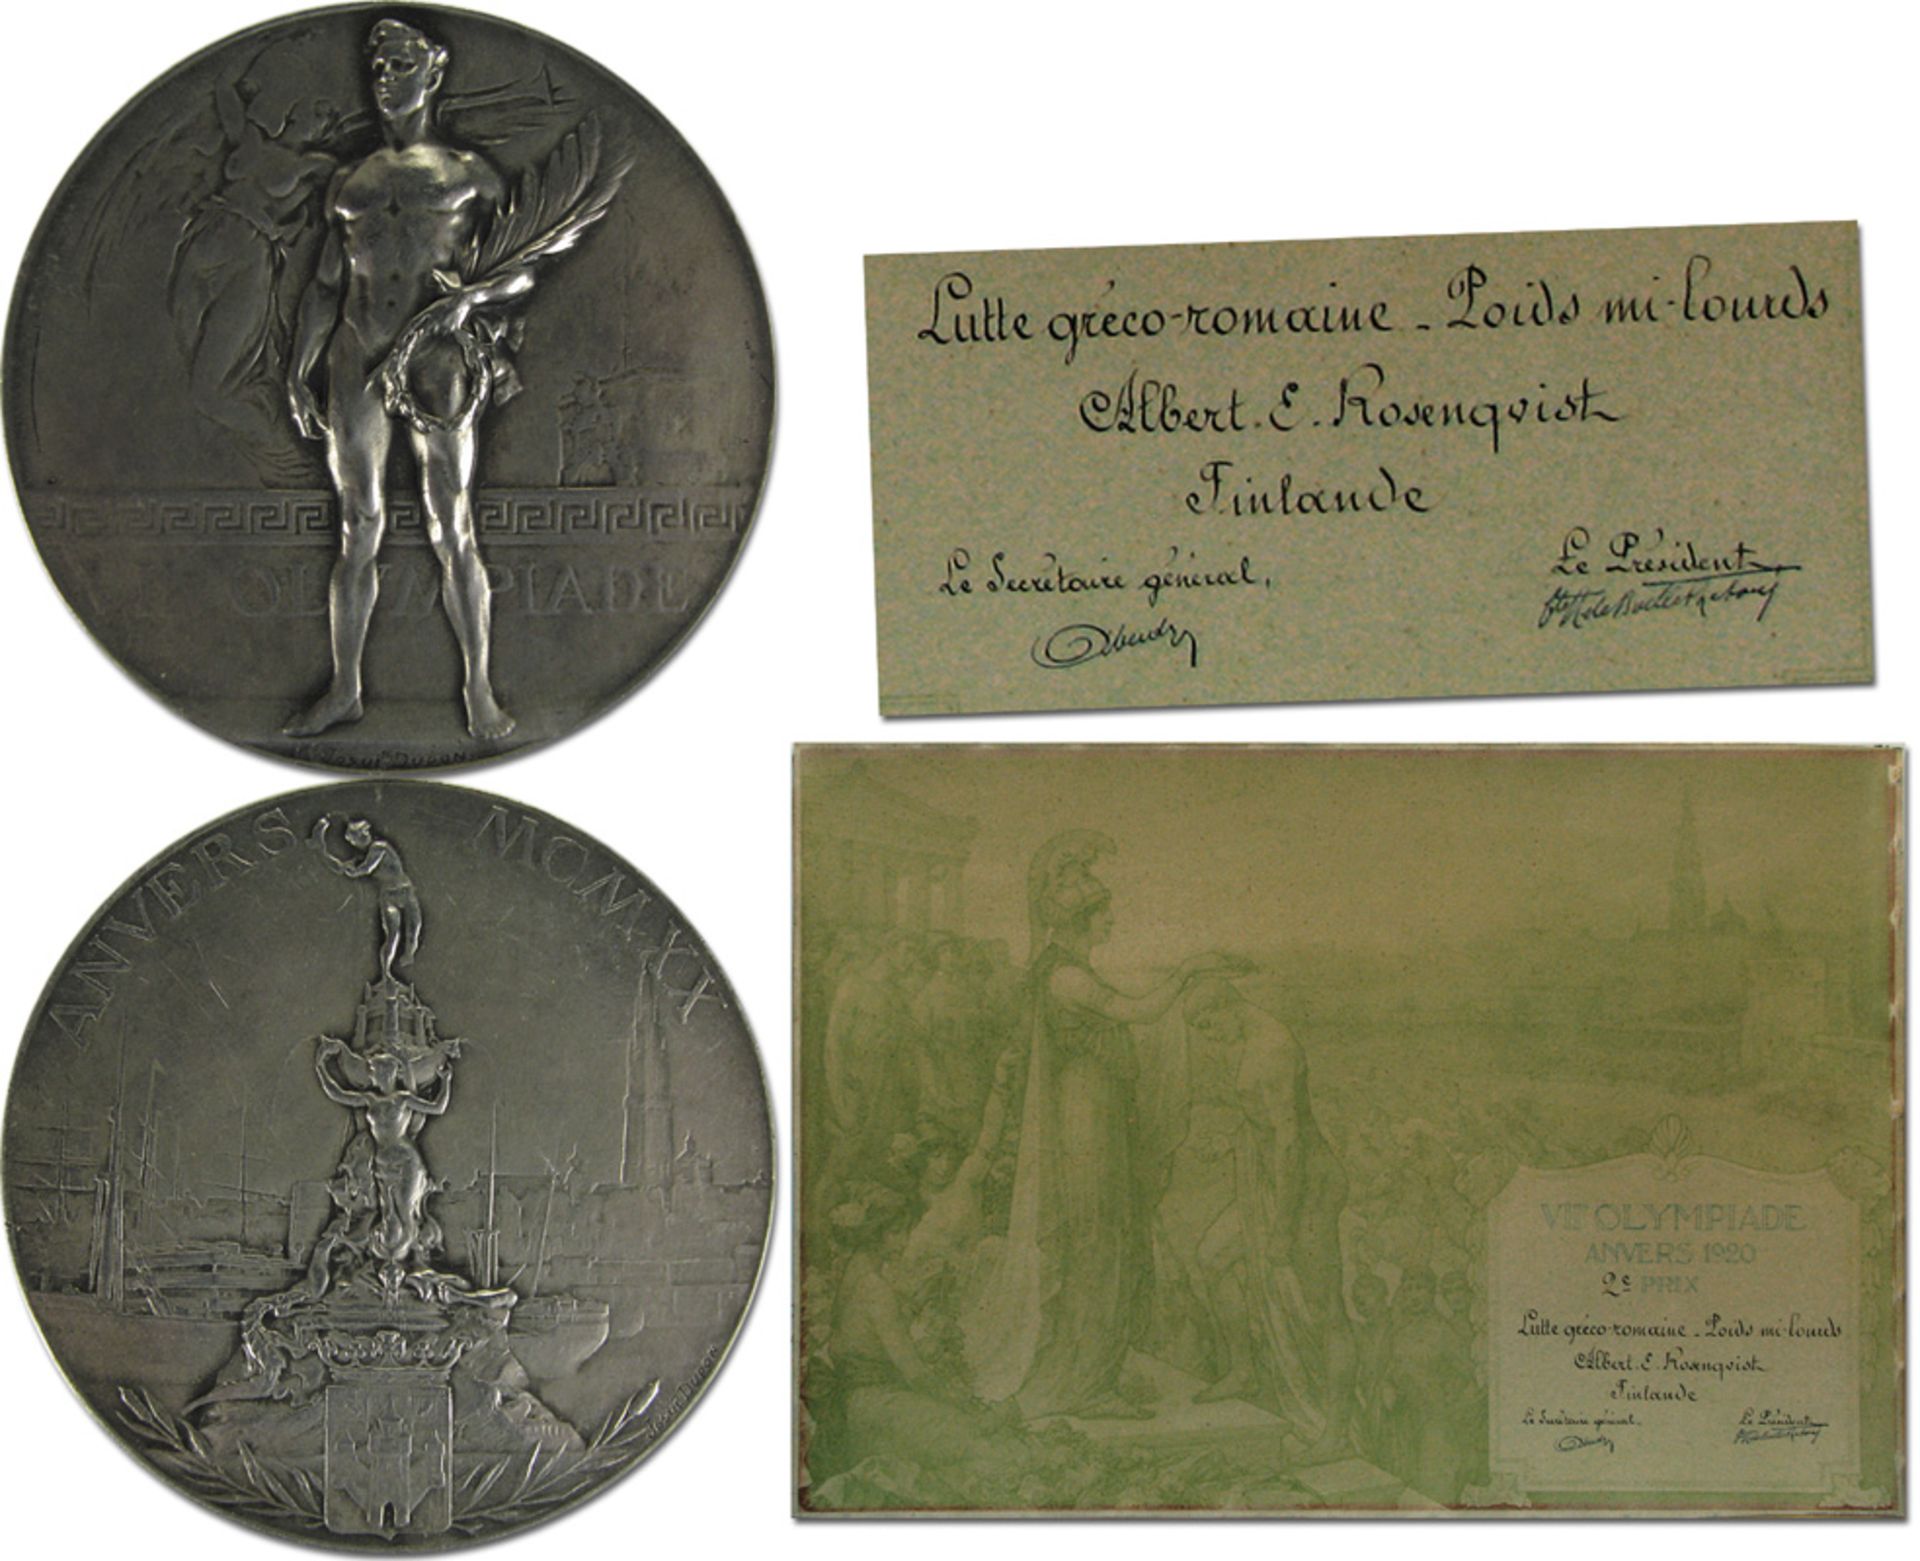 Siegermedaille 1920 - Silber-Siegermedaille von den VII. Olympischen Spielen 1920 in Antwerpen. (